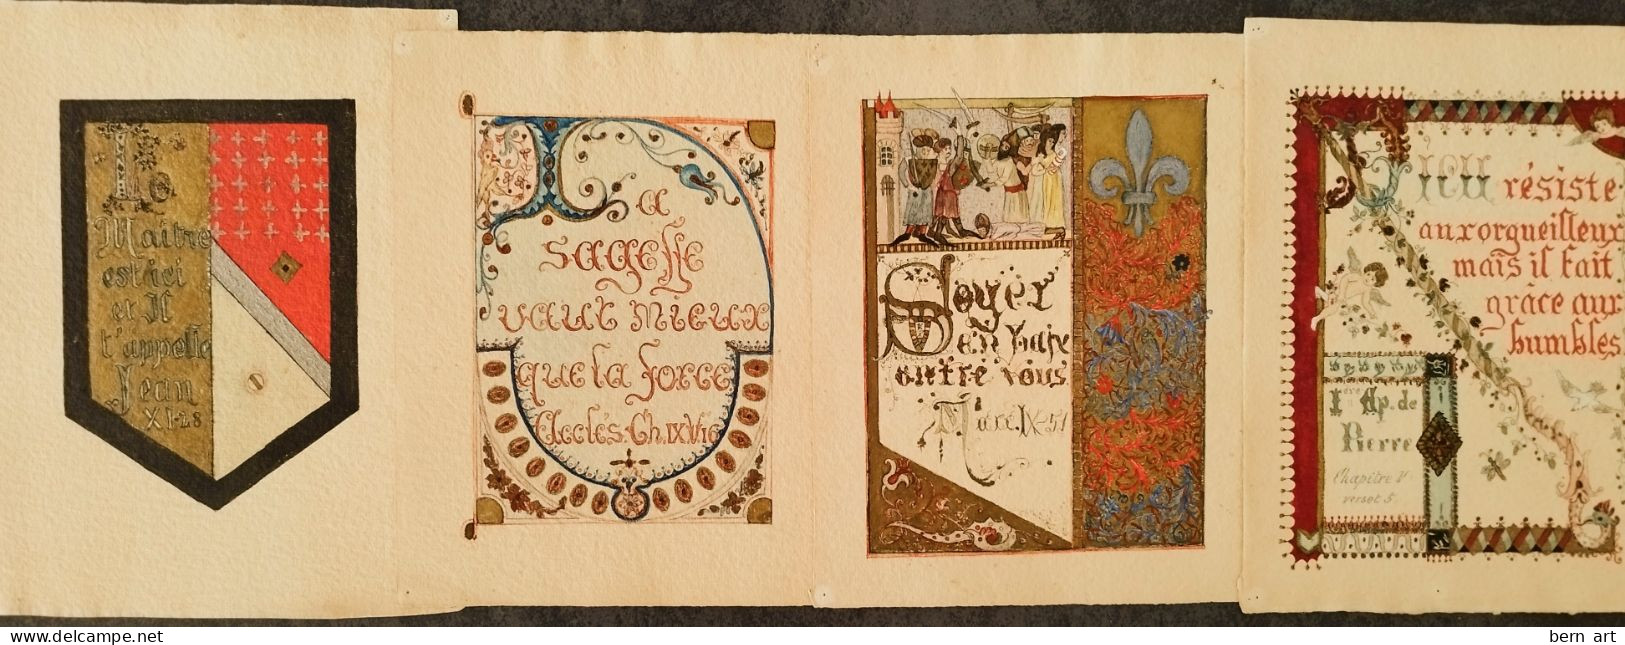 4 Enluminures Fin XIXè Sur Papier J. WHATMAN. Fond D'Atelier Artiste B.F. (Berthe Flournoy) Vers 1900 (Genève) - Aquarel